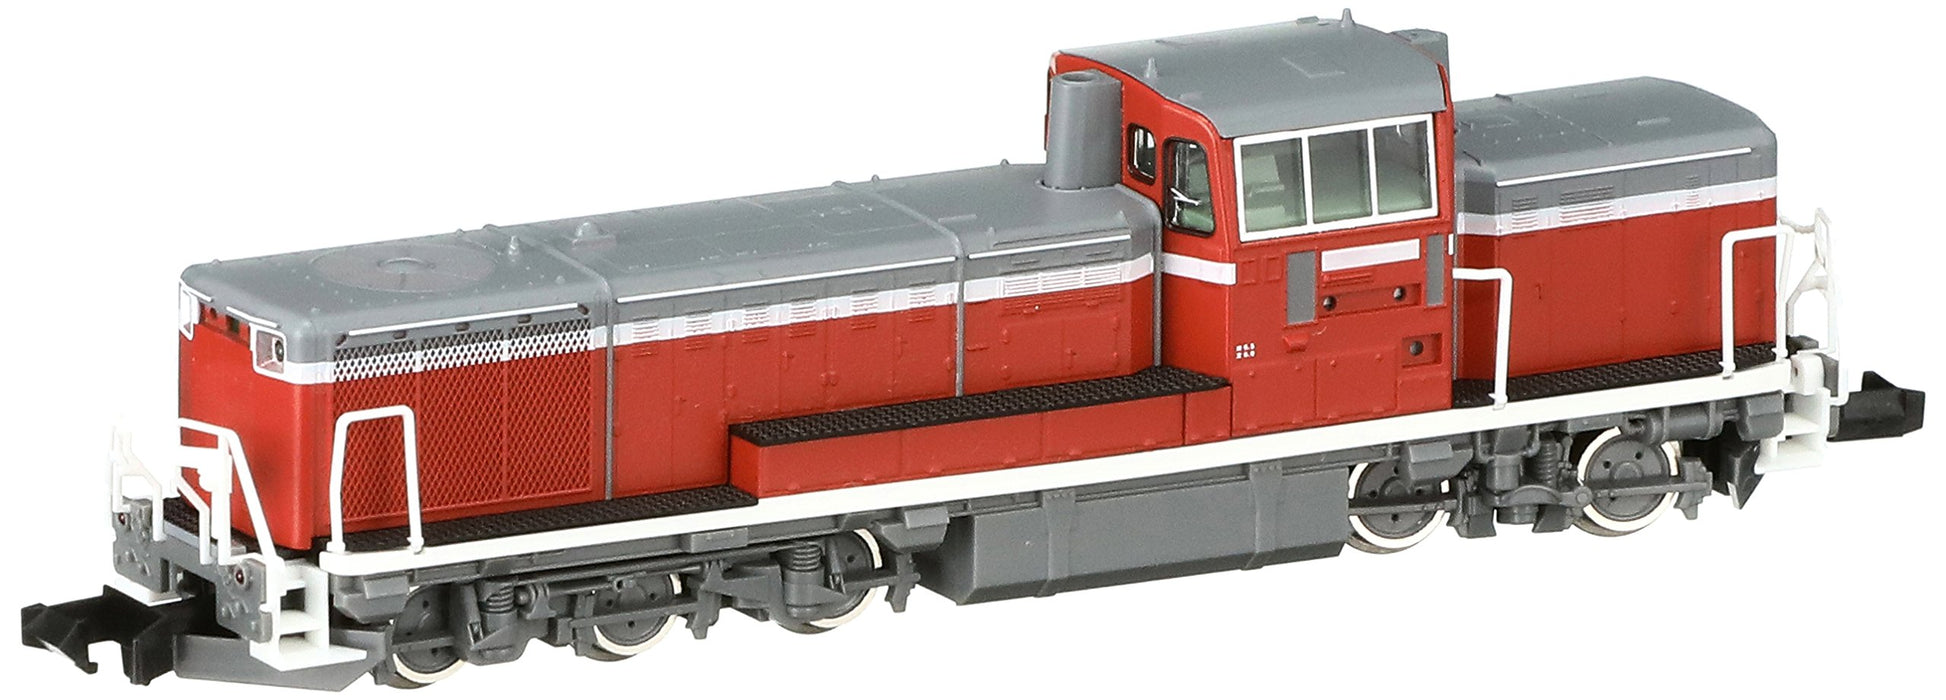 Tomytec Tomix N Gauge DE10-1000 Railway Model Diesel Locomotive JR Tokai 2235